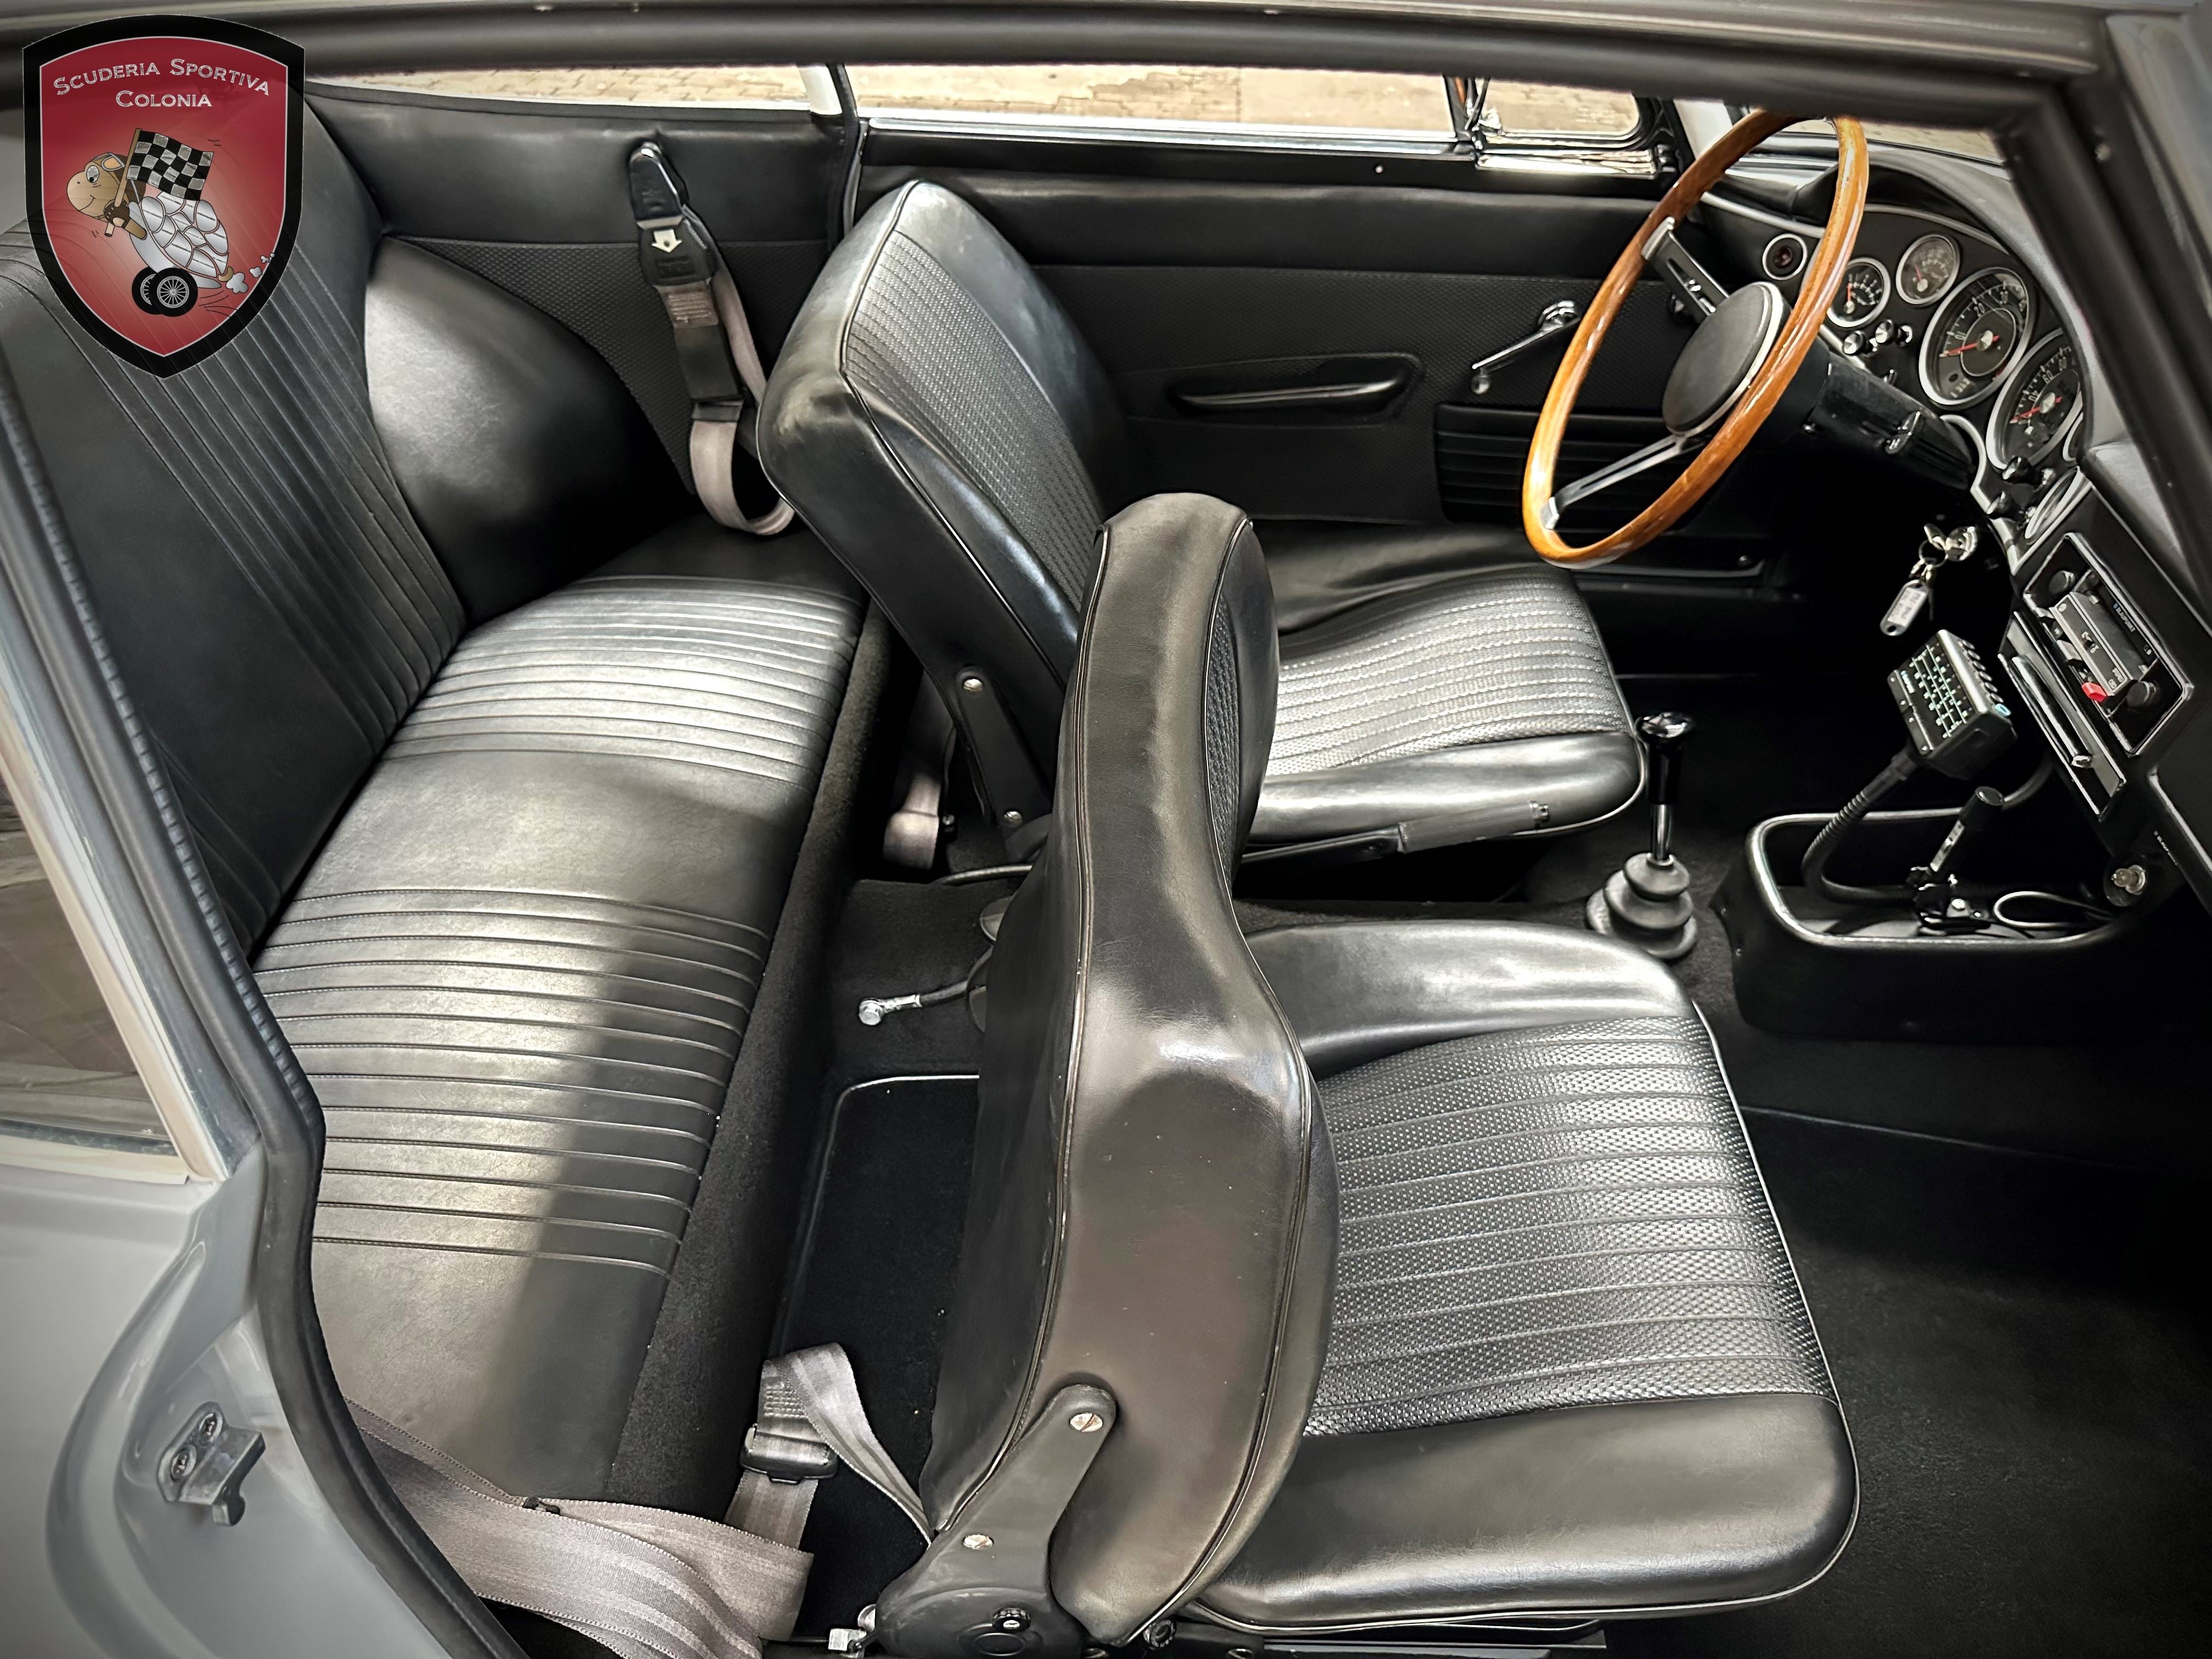 1969 BMW 1600 GT oldtimer te koop